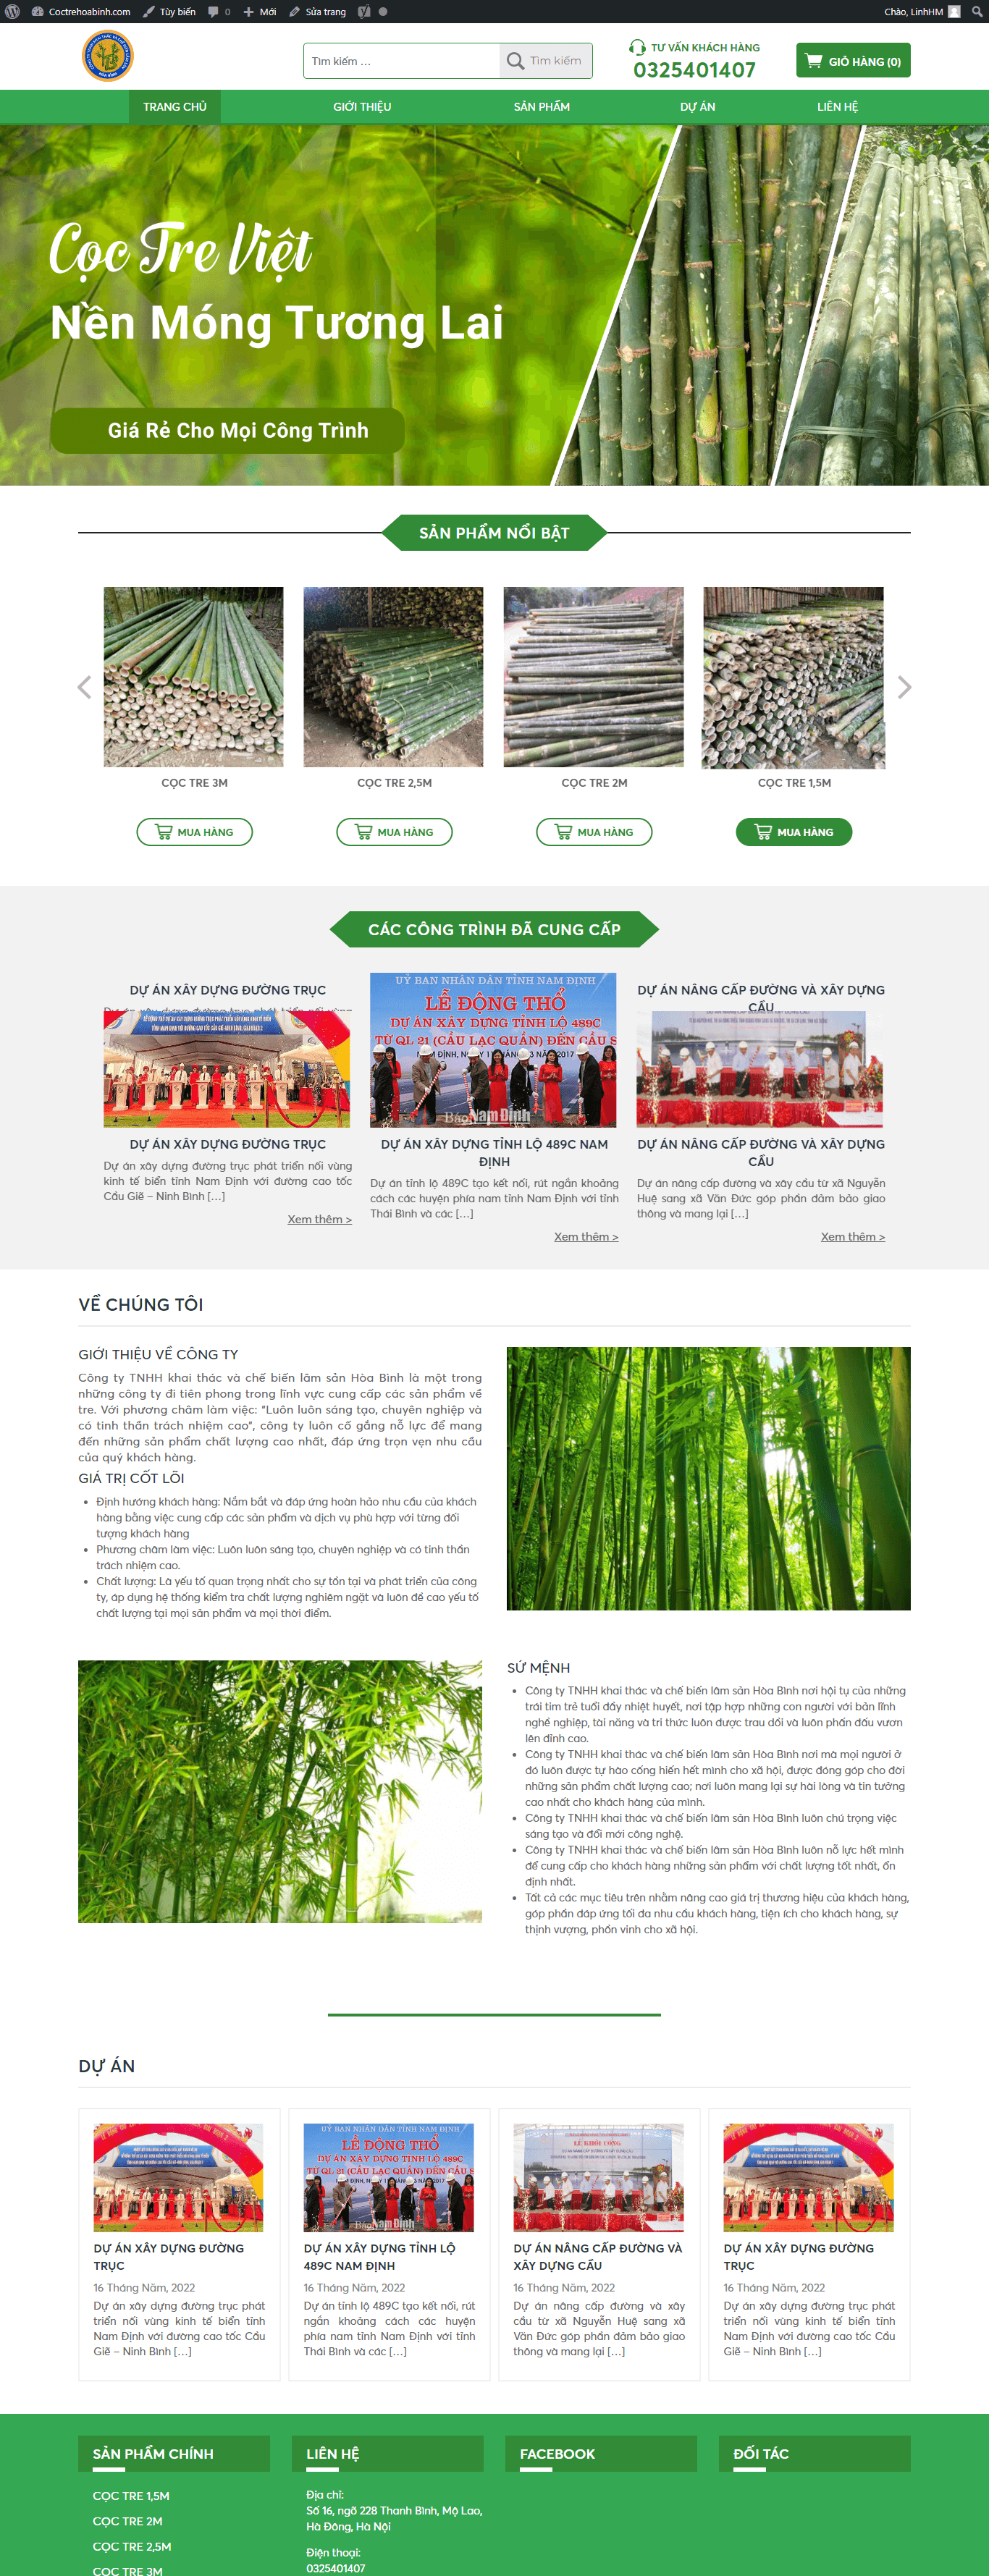 Mẫu thiết kế Website – Coctrehoabinh